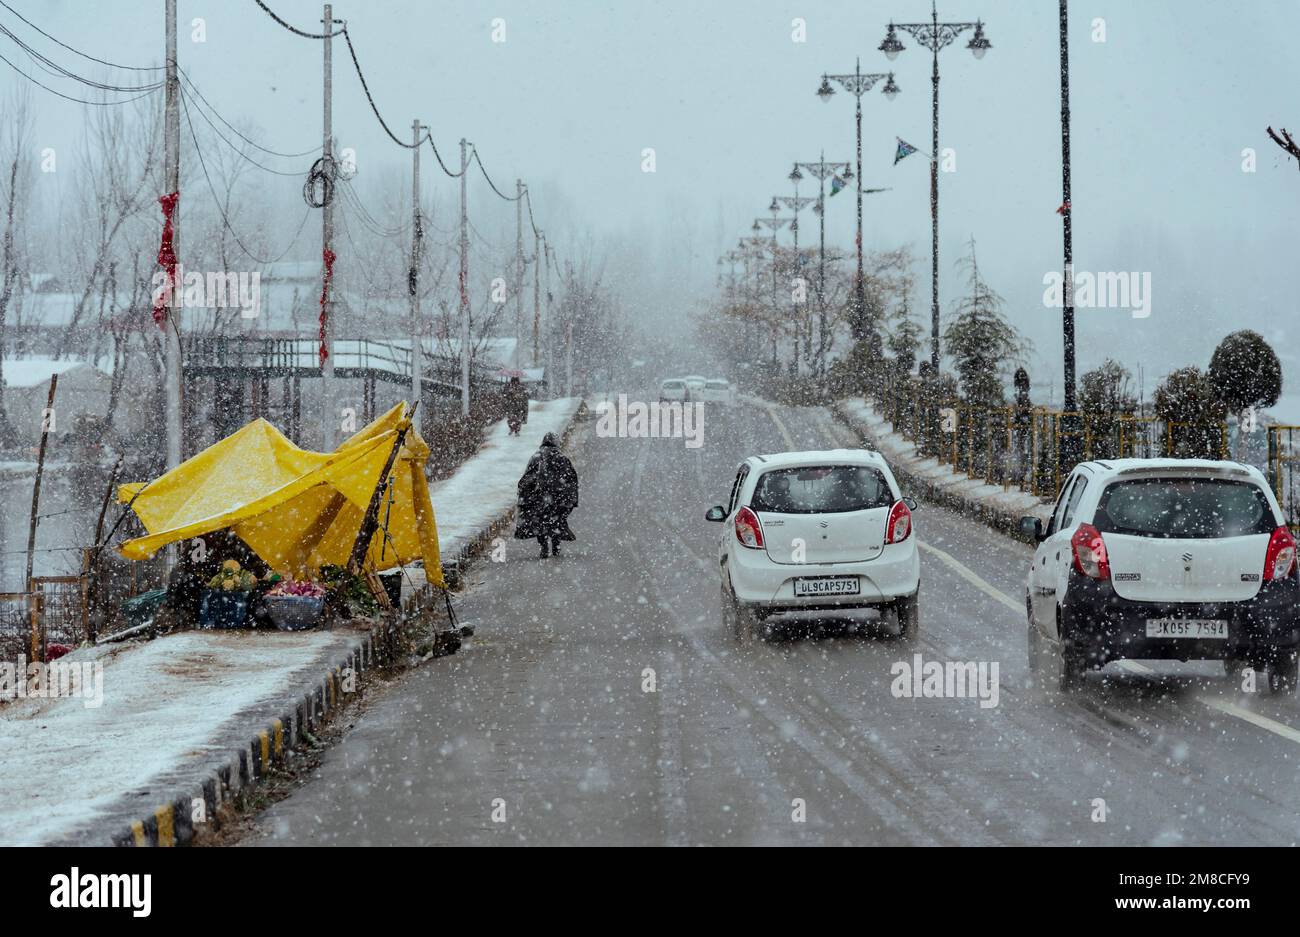 Un uomo cammina oltre del venditore di lato della strada durante la nevicata. Il Kashmir ha ricevuto nevicate fresche, con le cali più alte della valle che hanno ricevuto nevicate da moderate a pesanti e nevicate da leggere a moderate in pianura, causando una visibilità distruttiva. Questo ha influito sulle operazioni di volo insieme alla chiusura dell'autostrada nazionale Srinagar-Jammu. Foto Stock